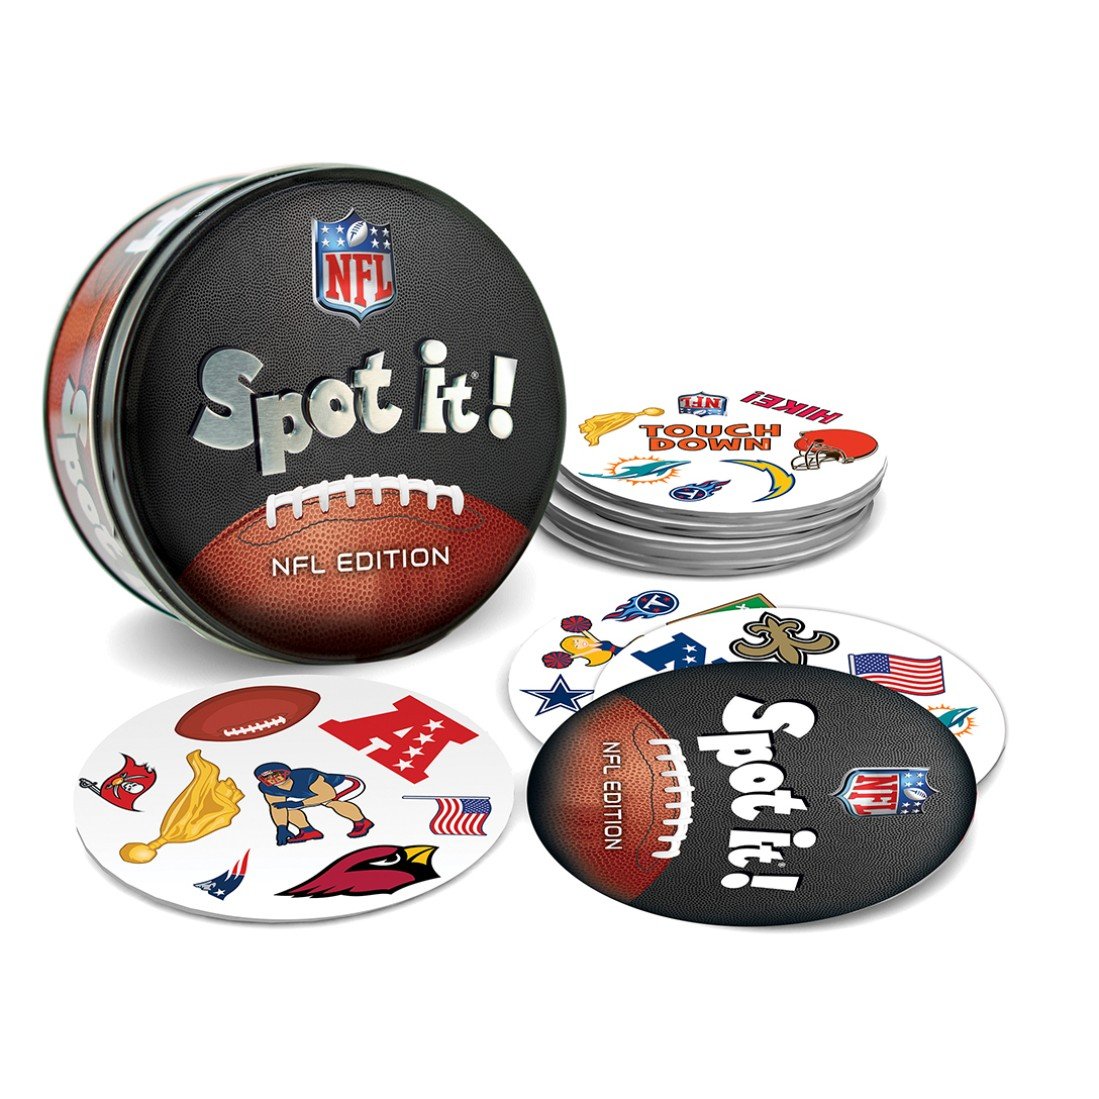 MasterPieces NFL Spot It! League Version Edition